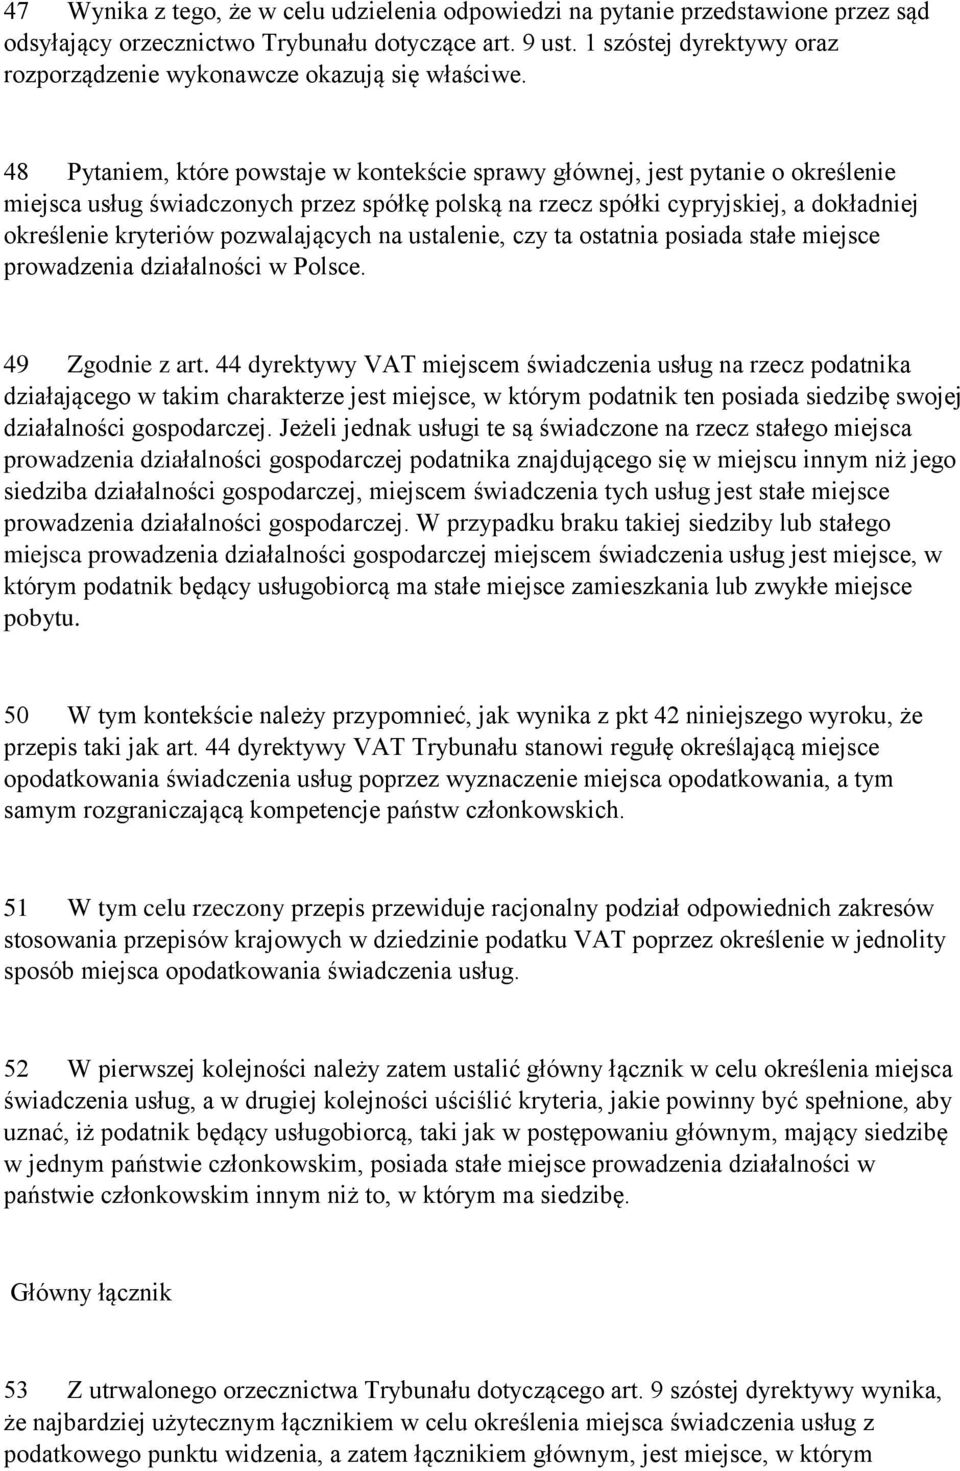 48 Pytaniem, które powstaje w kontekście sprawy głównej, jest pytanie o określenie miejsca usług świadczonych przez spółkę polską na rzecz spółki cypryjskiej, a dokładniej określenie kryteriów